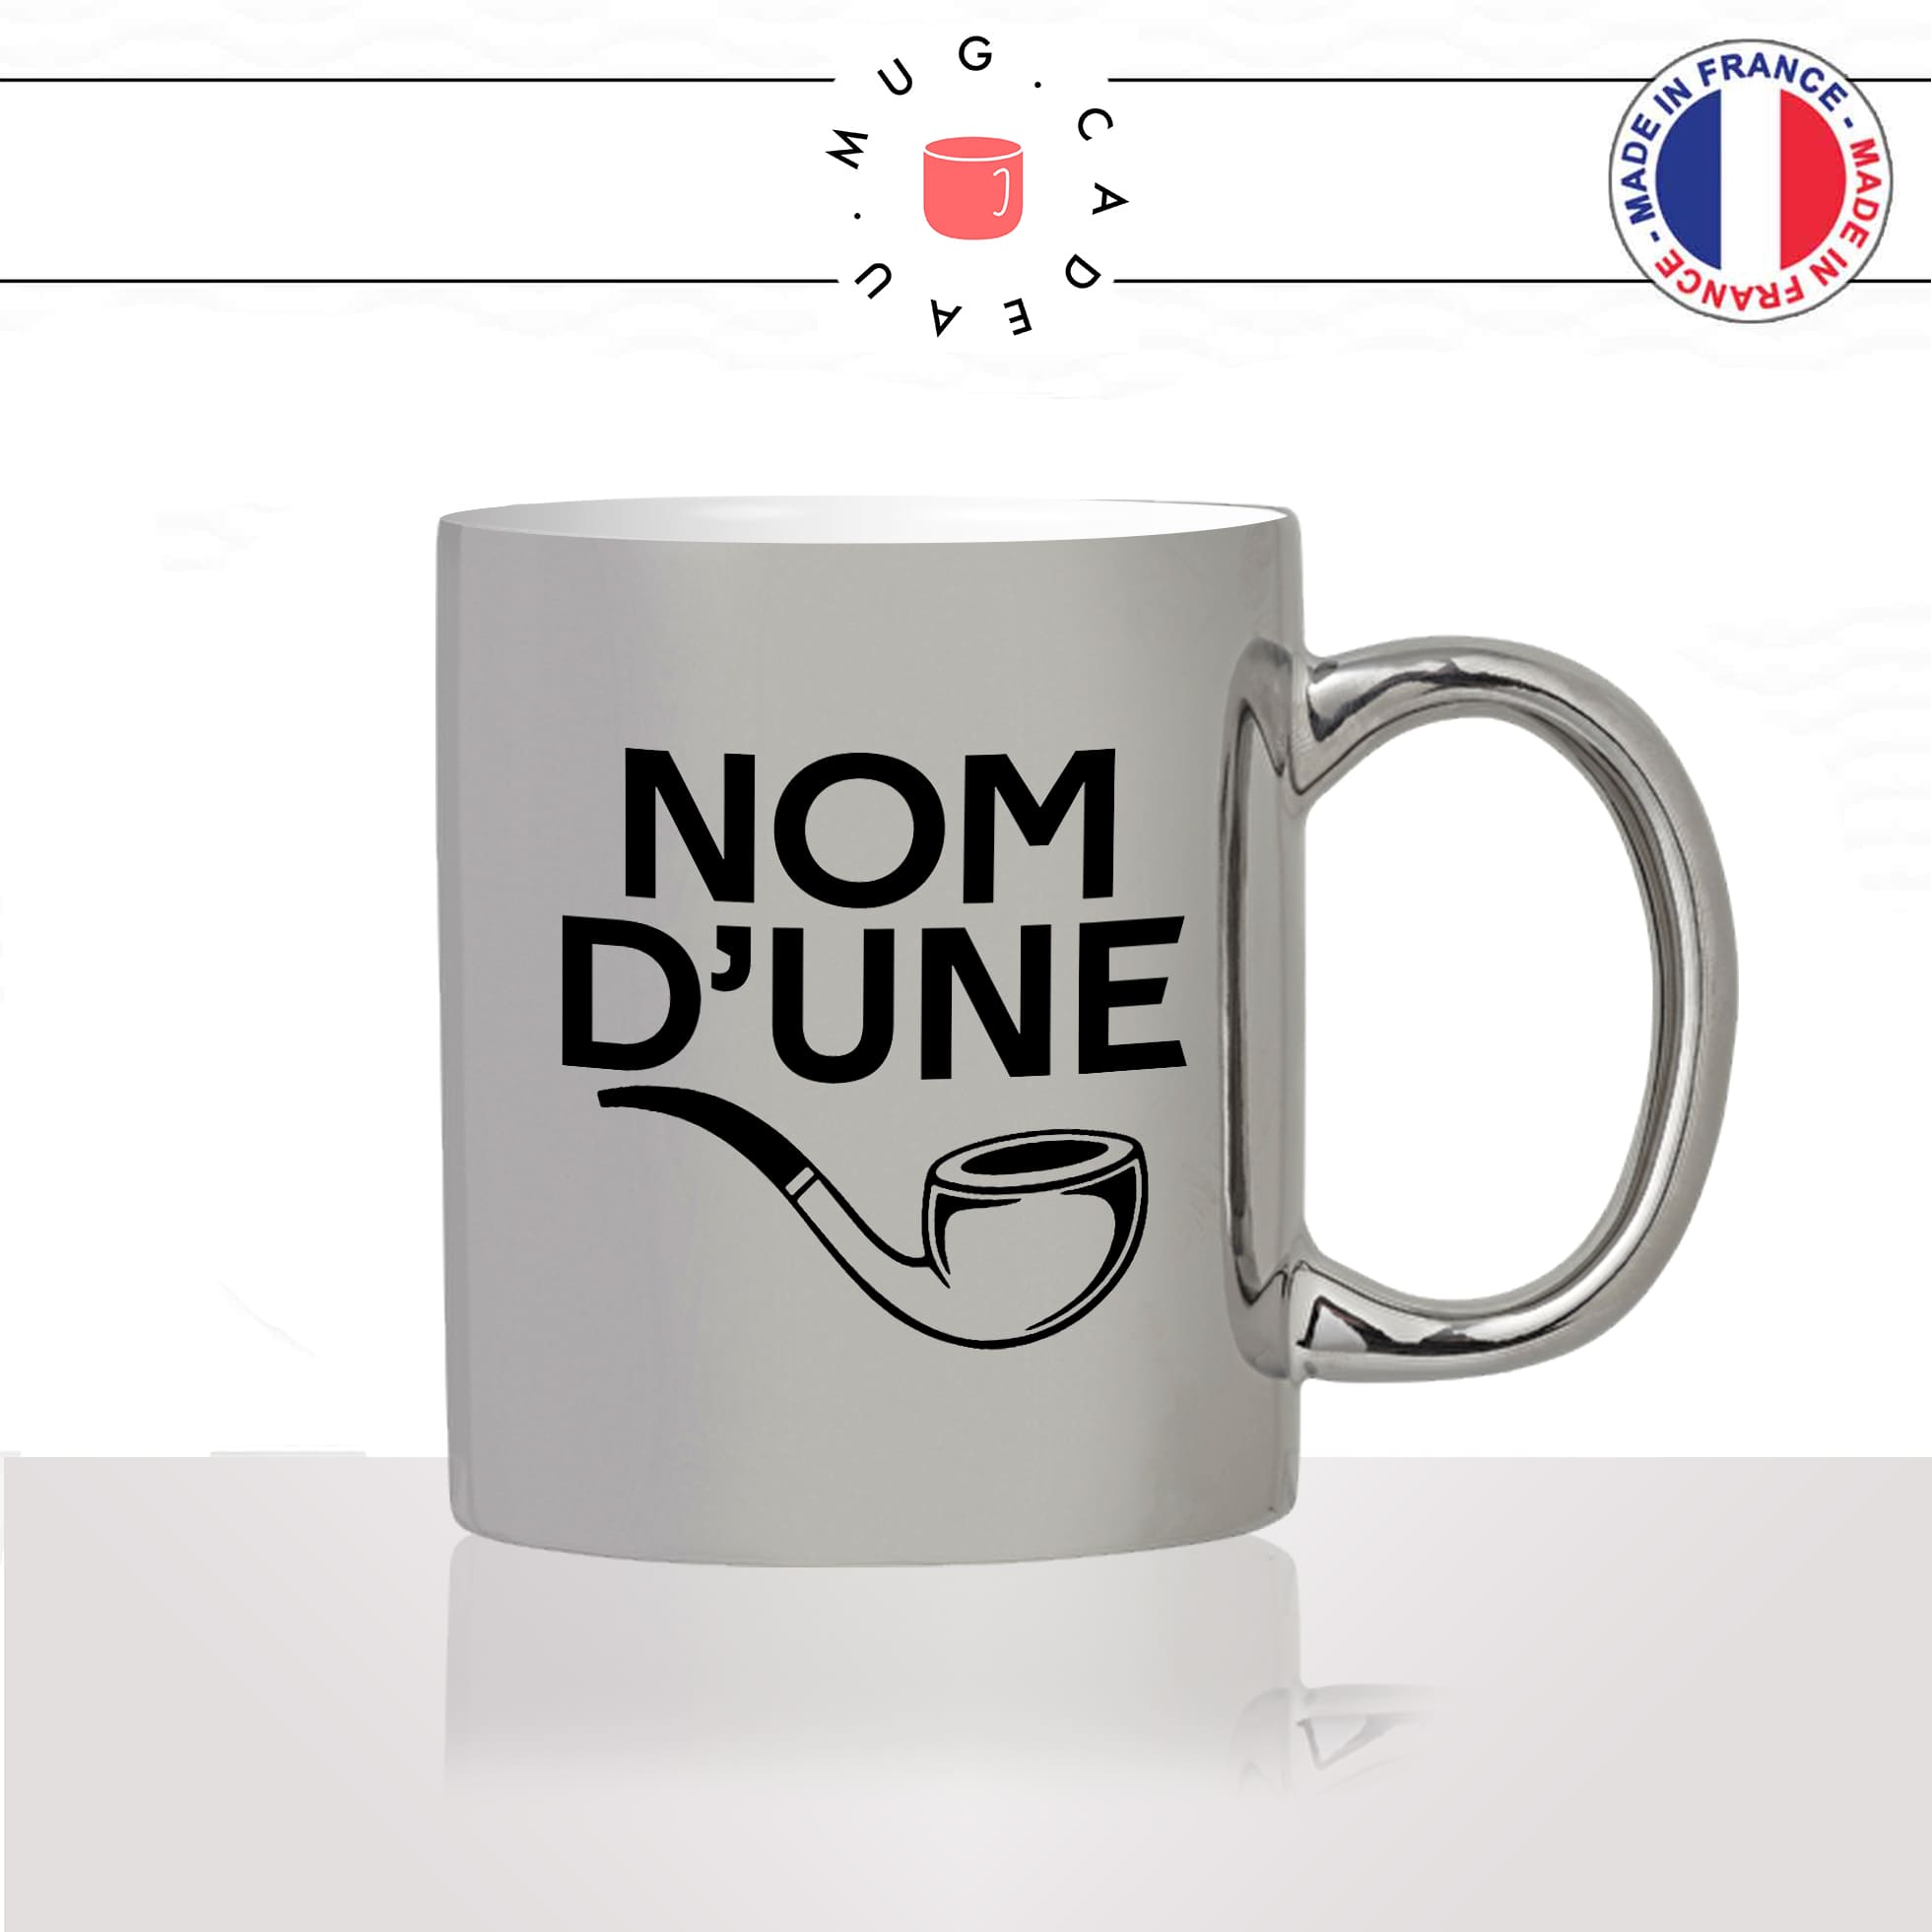 mug-tasse-argenté-argent-gris-silver-nom-dune-pipe-expression-francaise-putin-fumer-fumeur-moustache-humour-fun-idée-cadeau-originale2